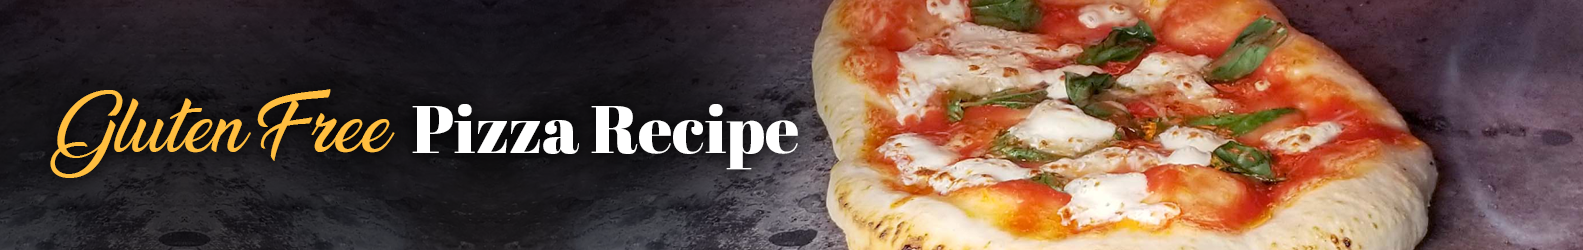 Gluten free pizza and dough recipe